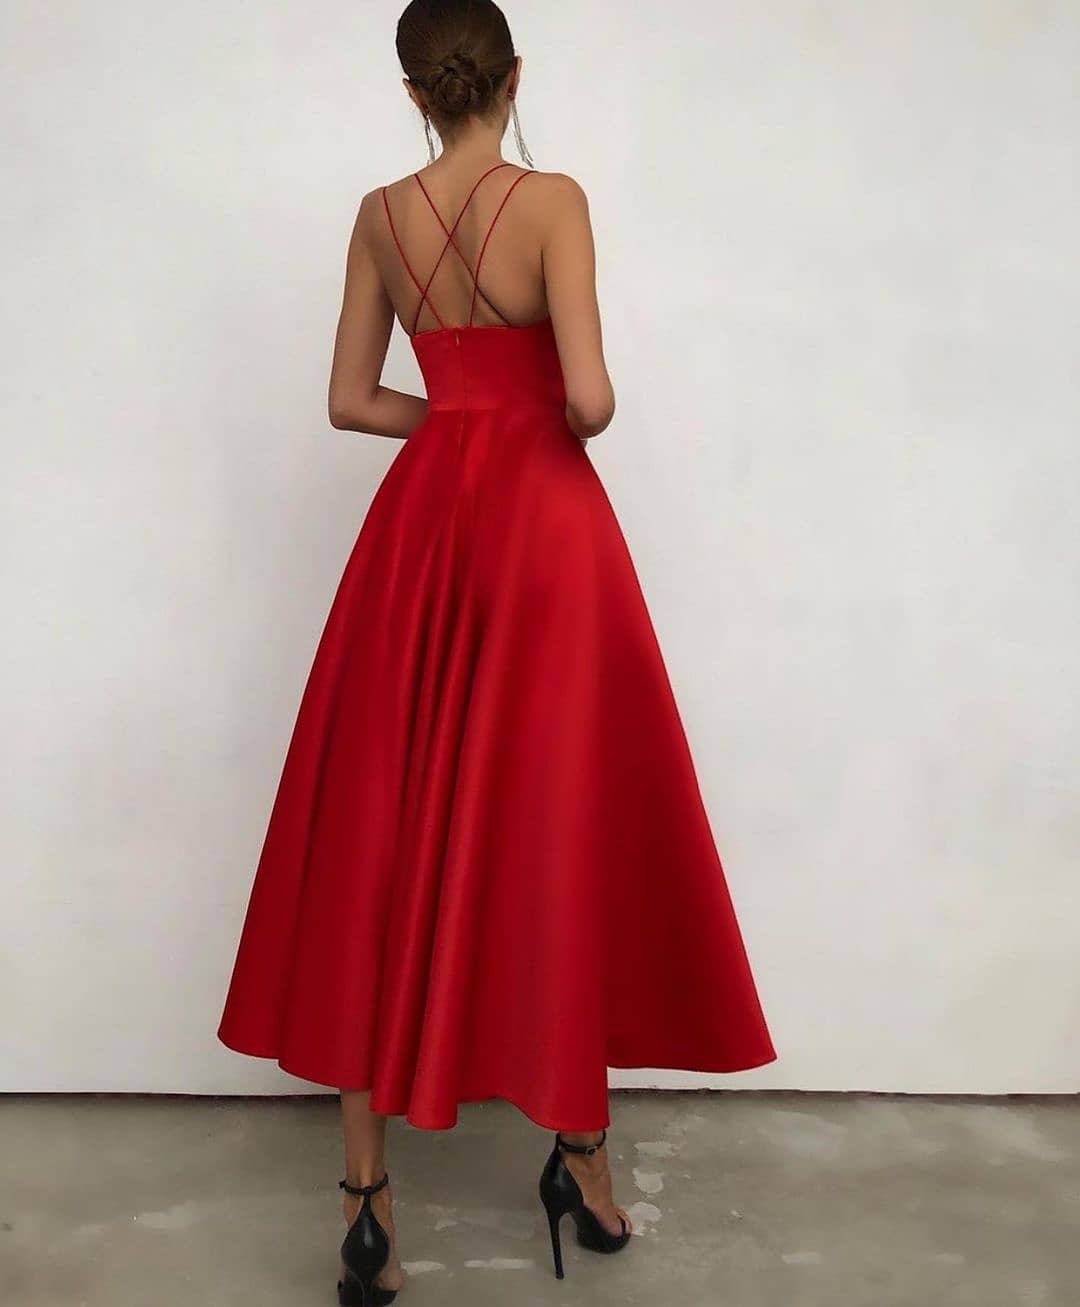 Finden Sie Rote Cocktailkleider Günstig online bei Thekleid.de. Abendkleider Abiballkleider Online mit hocher qualität bekommen.